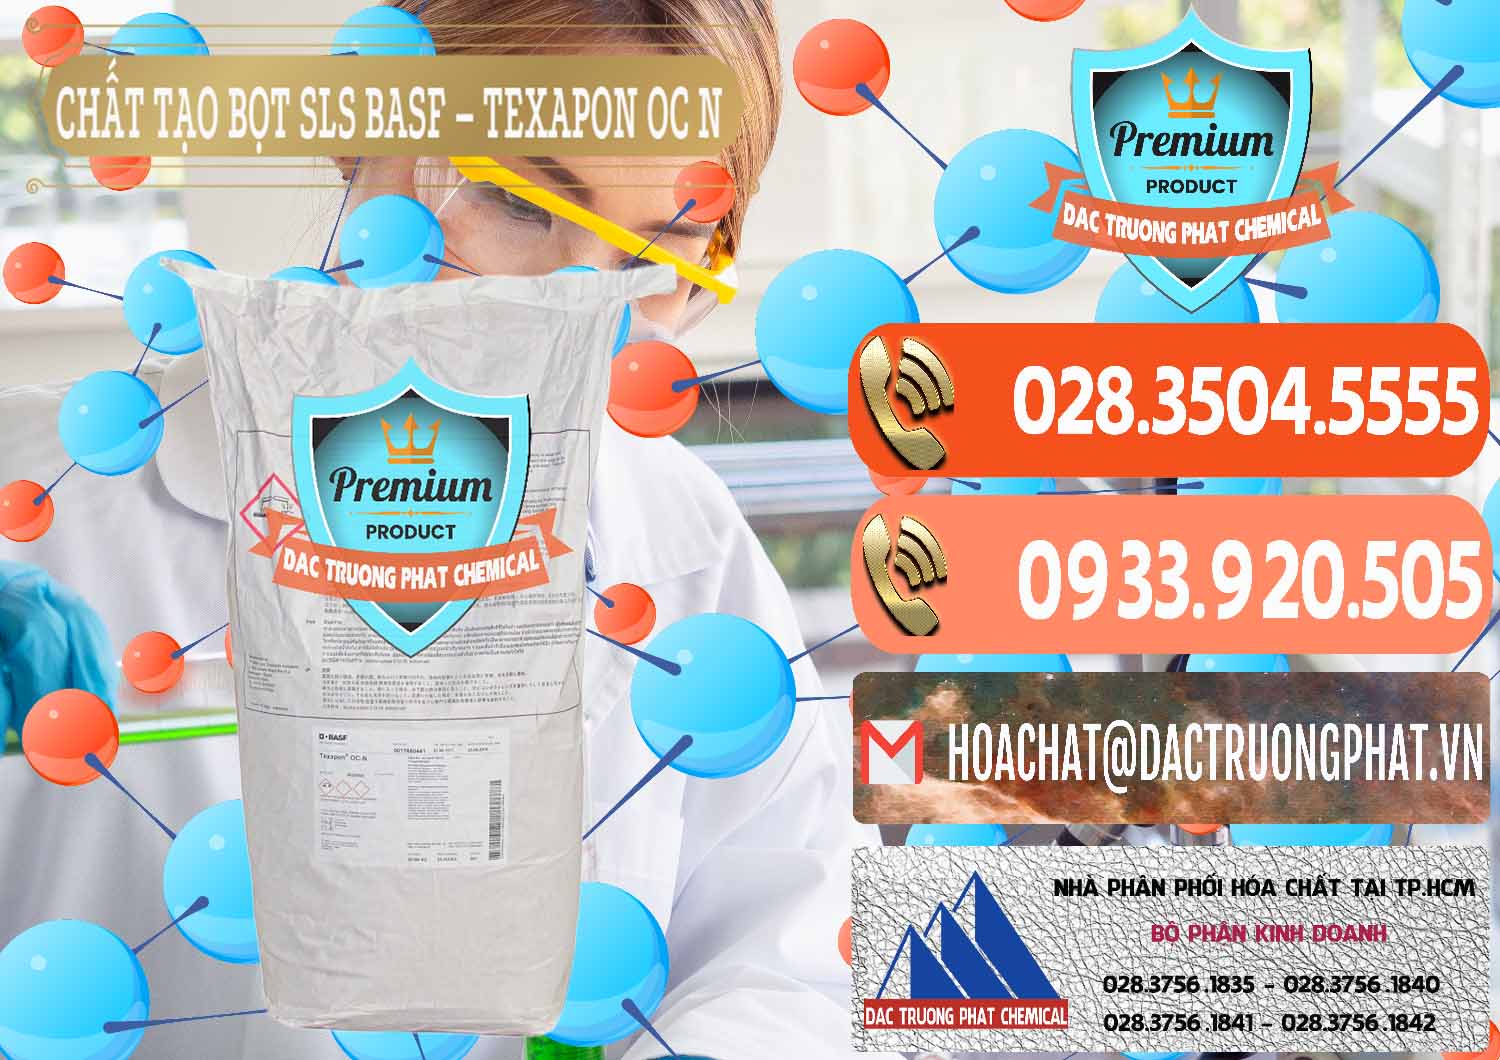 Nhà nhập khẩu và bán Chất Tạo Bọt SLS - Sodium Lauryl Sulfate BASF Texapon OC N - 0049 - Nơi chuyên kinh doanh và cung cấp hóa chất tại TP.HCM - hoachatmientay.com